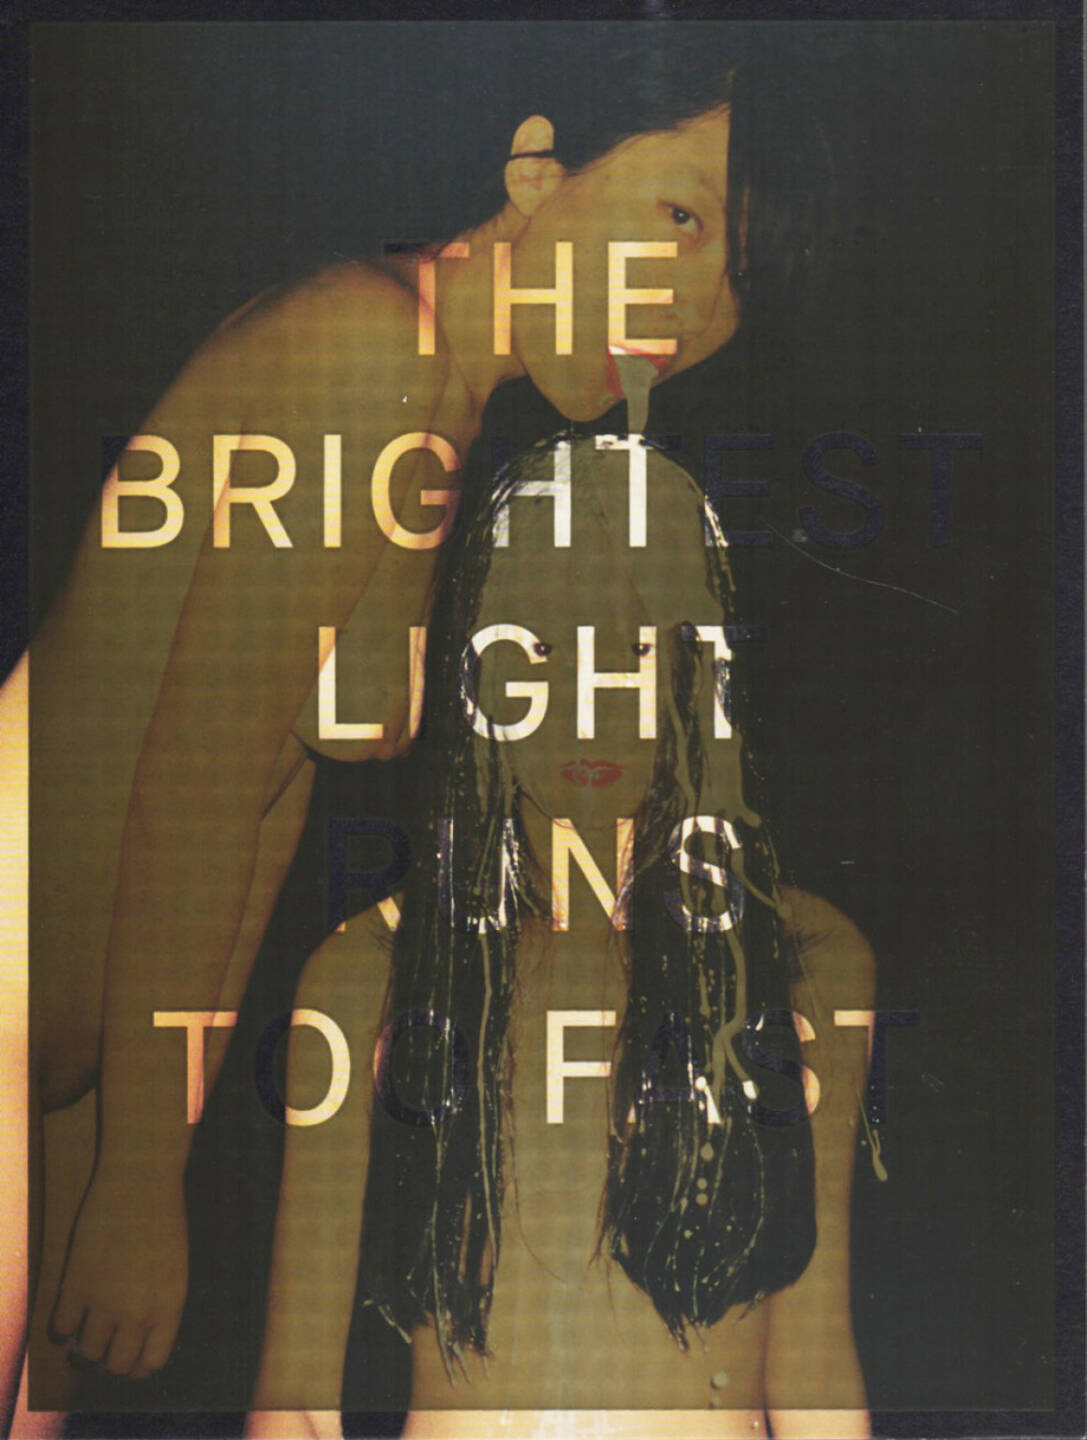 Ren Hang - The brightest light runs too fast, Editions Bessard 2014, Cover - http://josefchladek.com/book/ren_hang_-_the_brightest_light_runs_too_fast